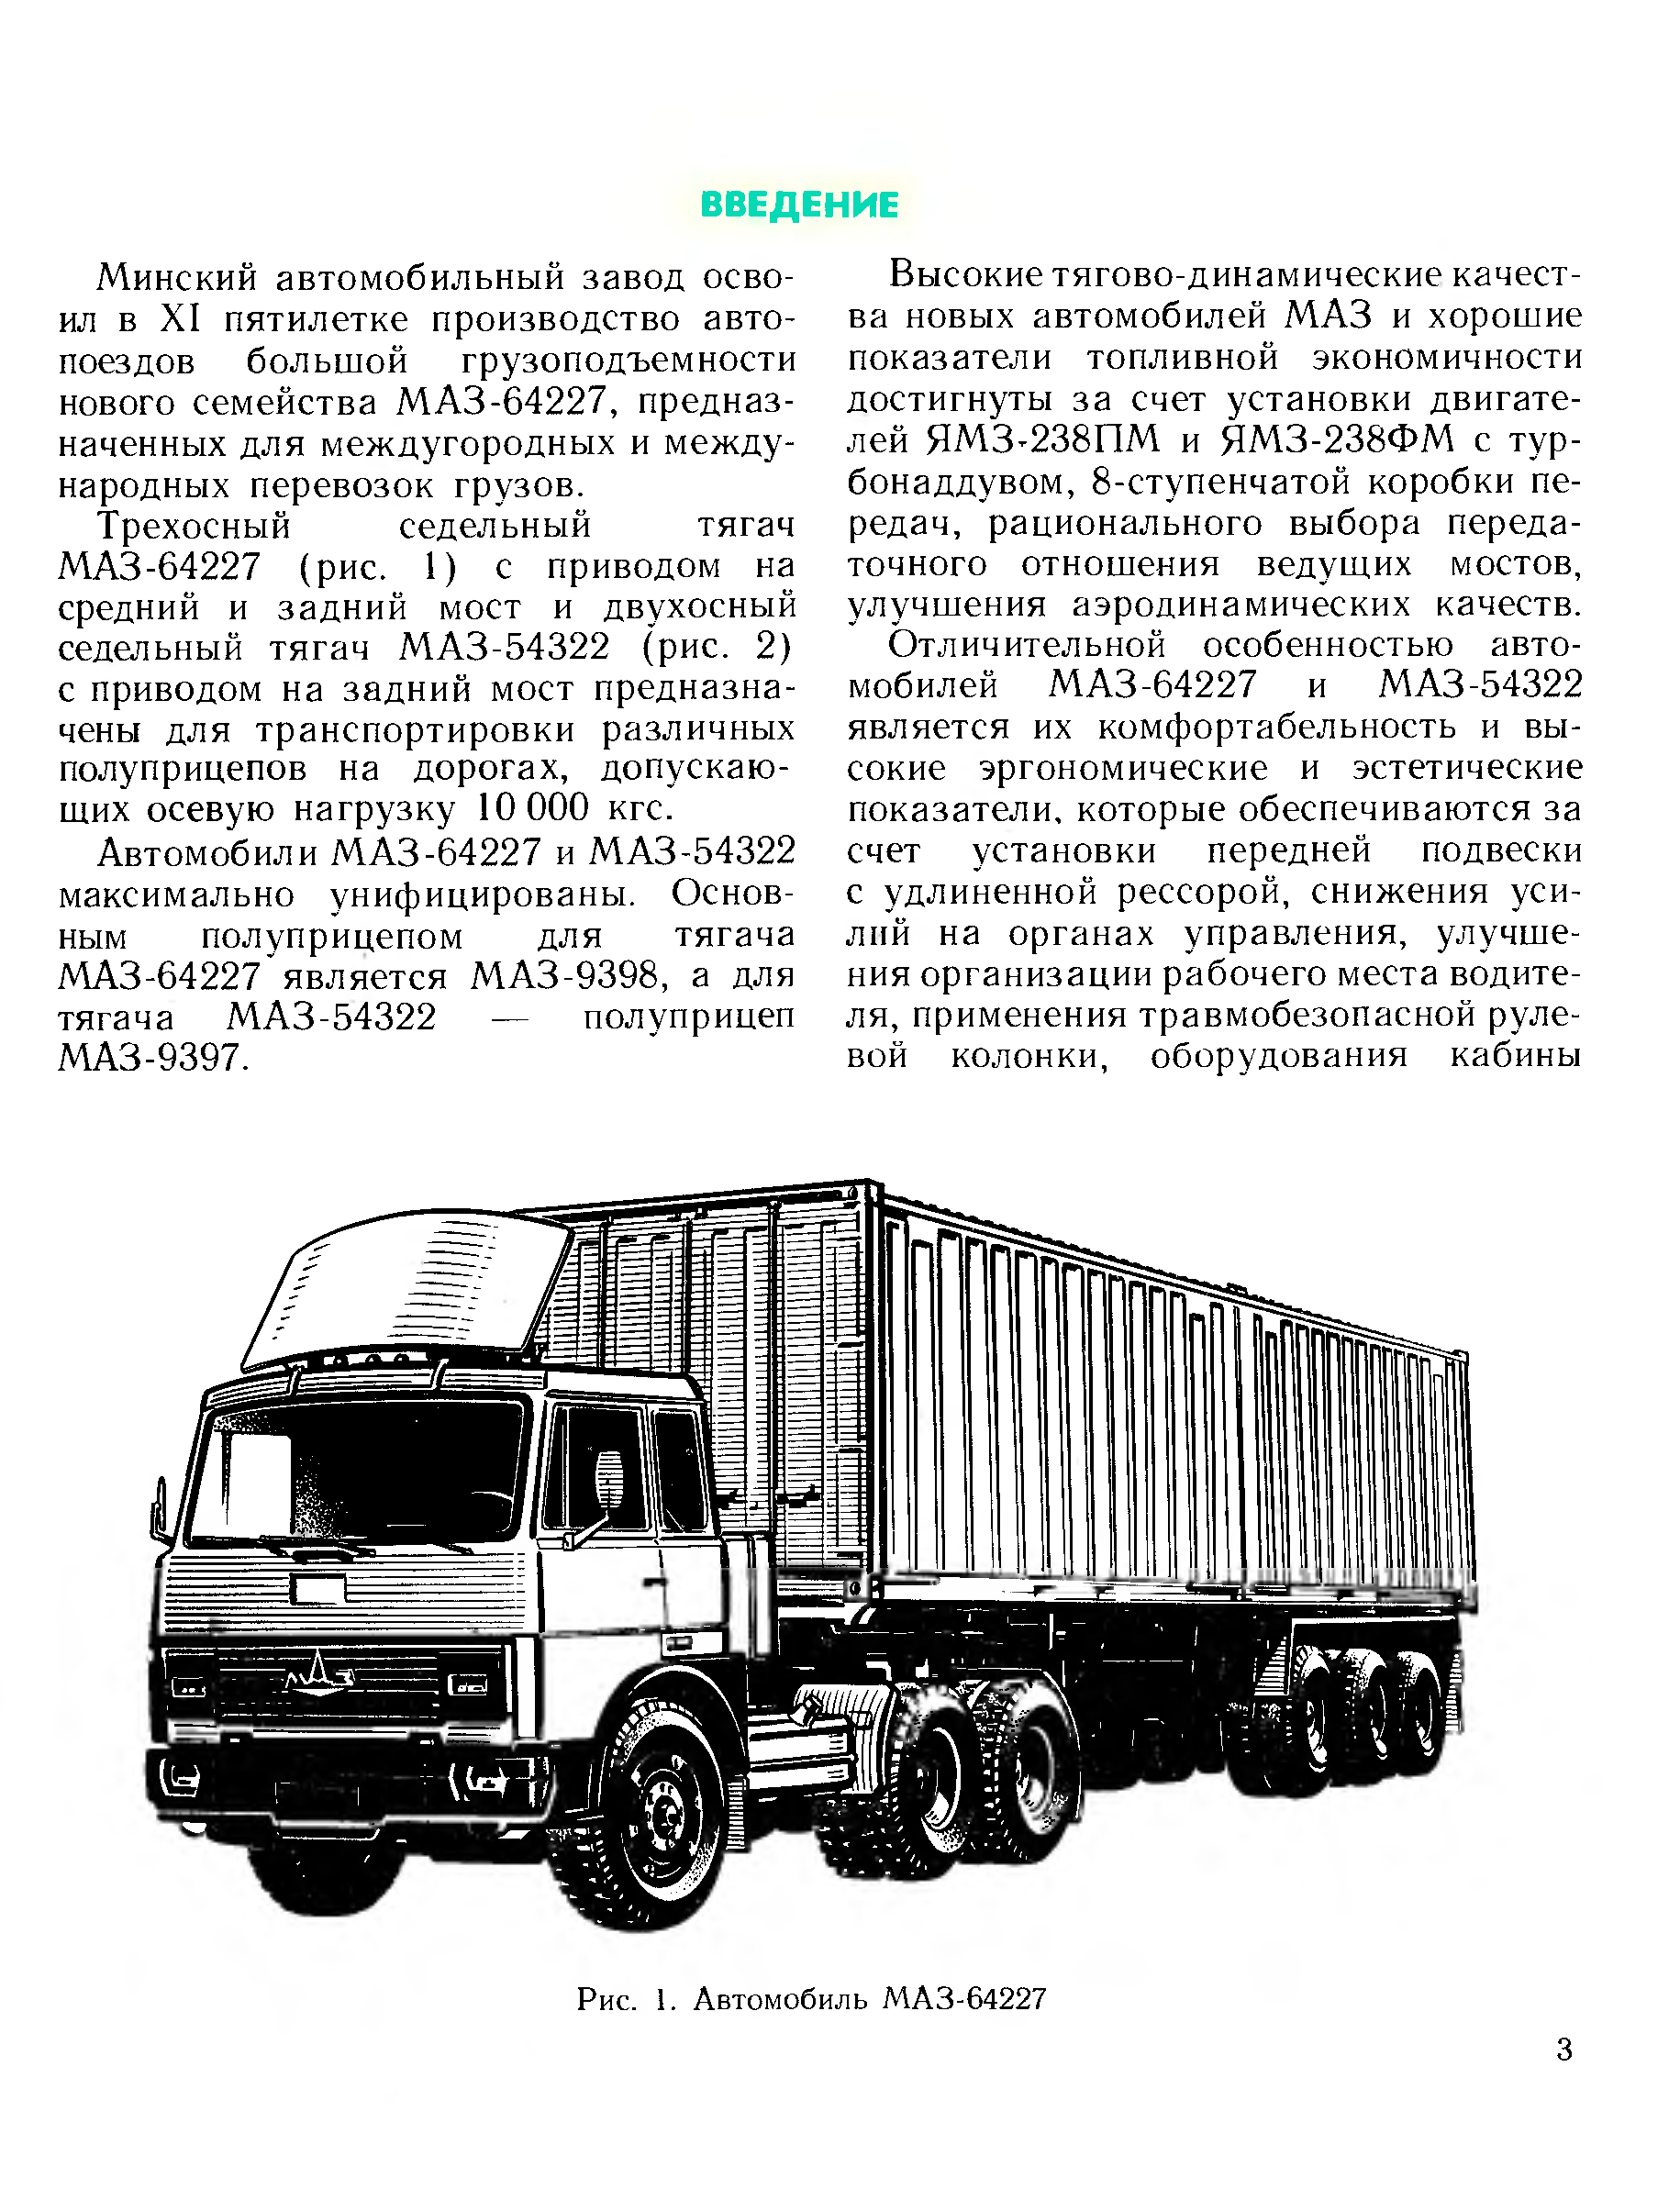 Маз-5432 - все про машиностроение и агрегаты на nadmash.ru